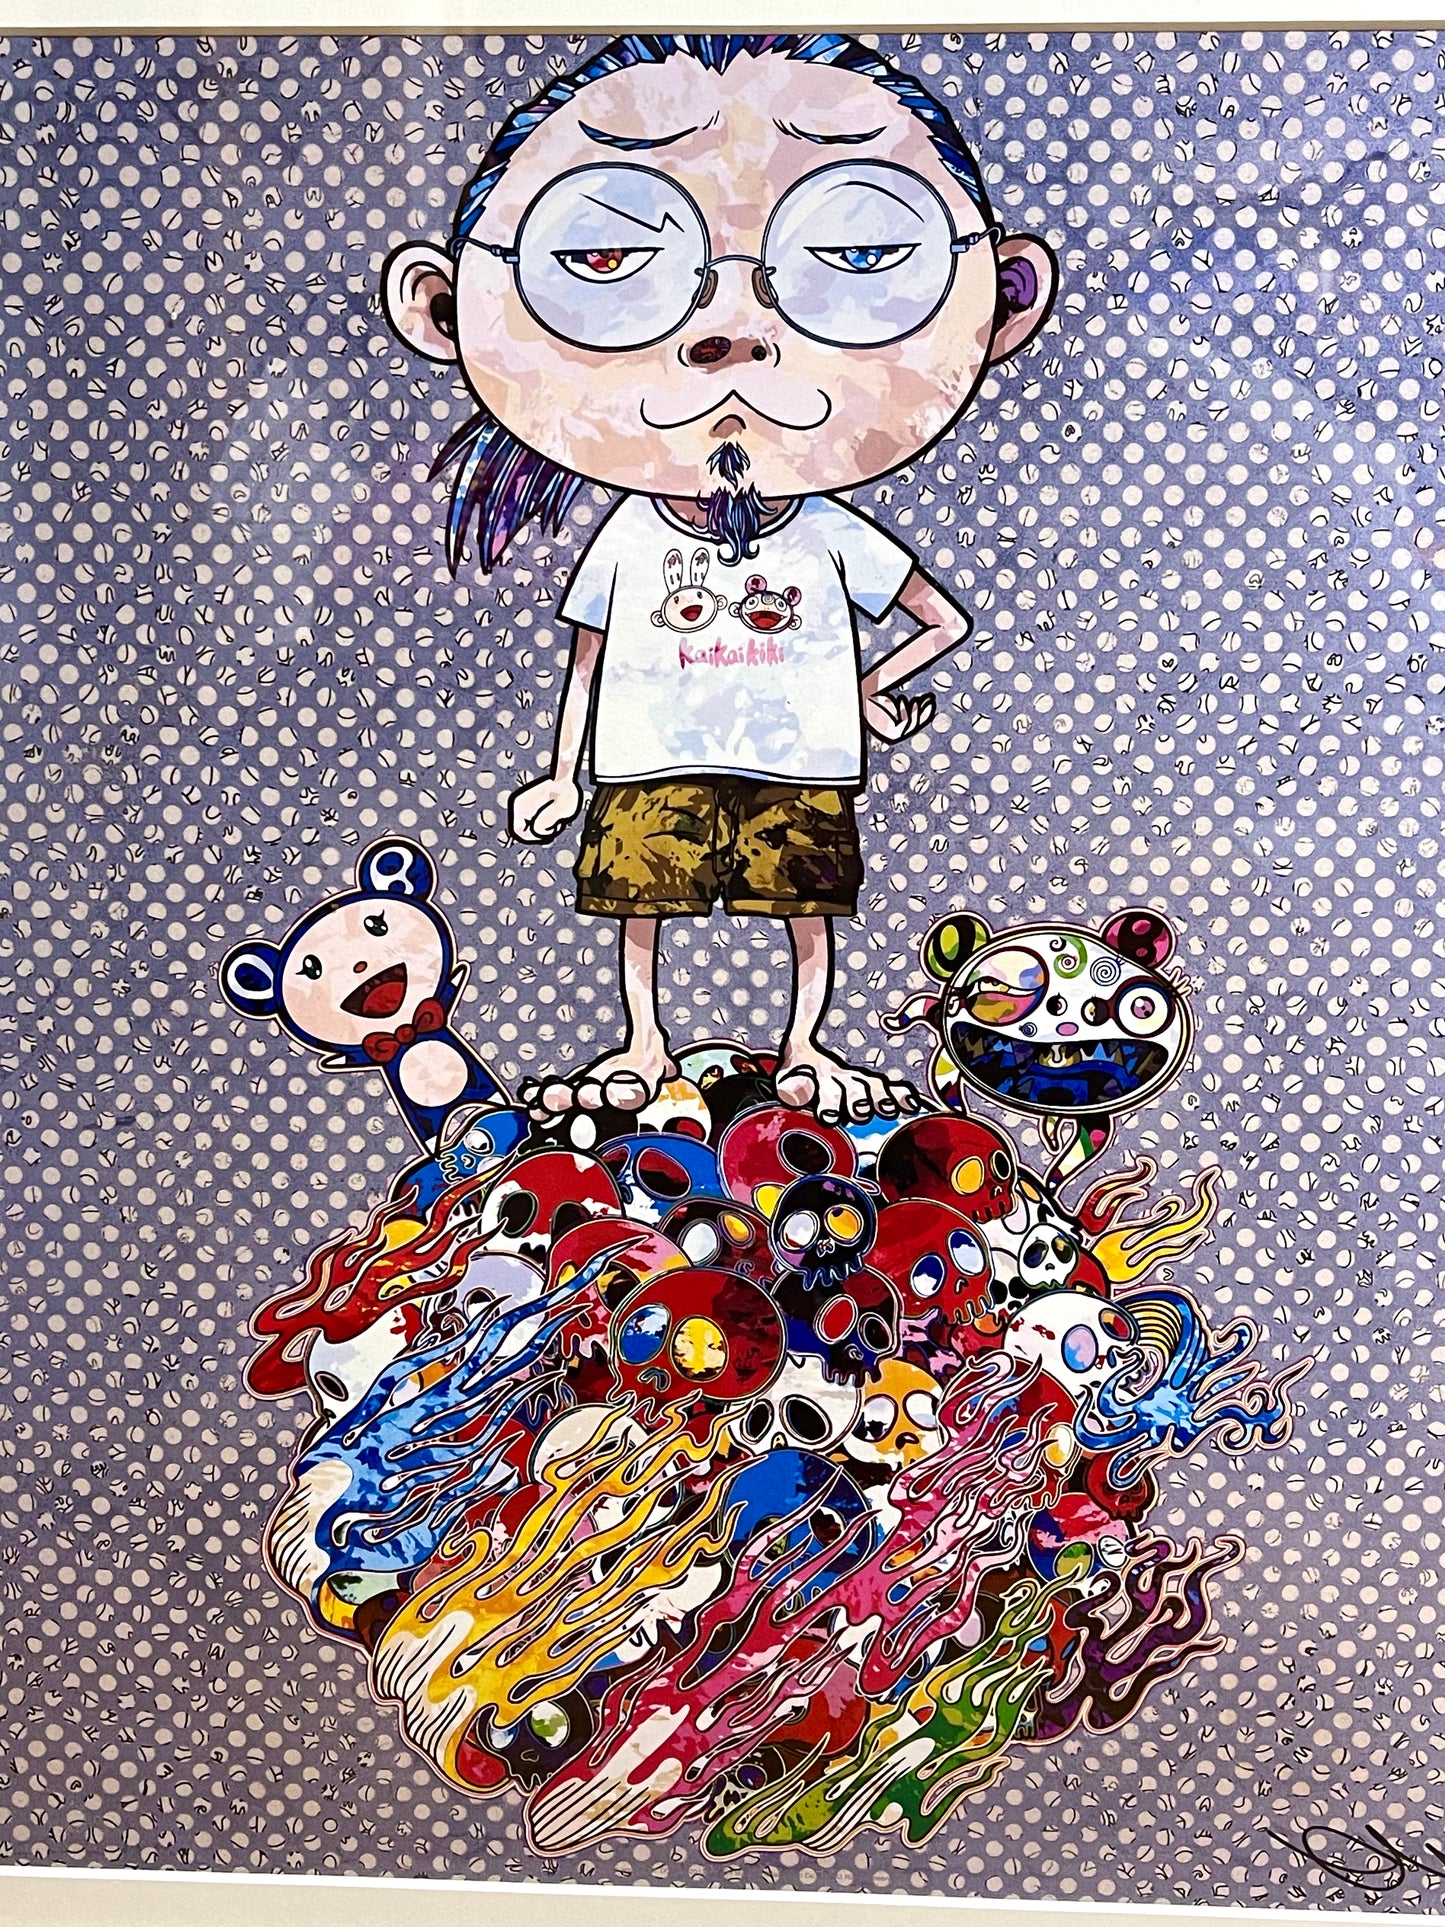 Authentic Framed Takashi Murakami Kaikaikiki "Kaikai to Kiki to Boku" Litho Signed Poster Print 300 ED